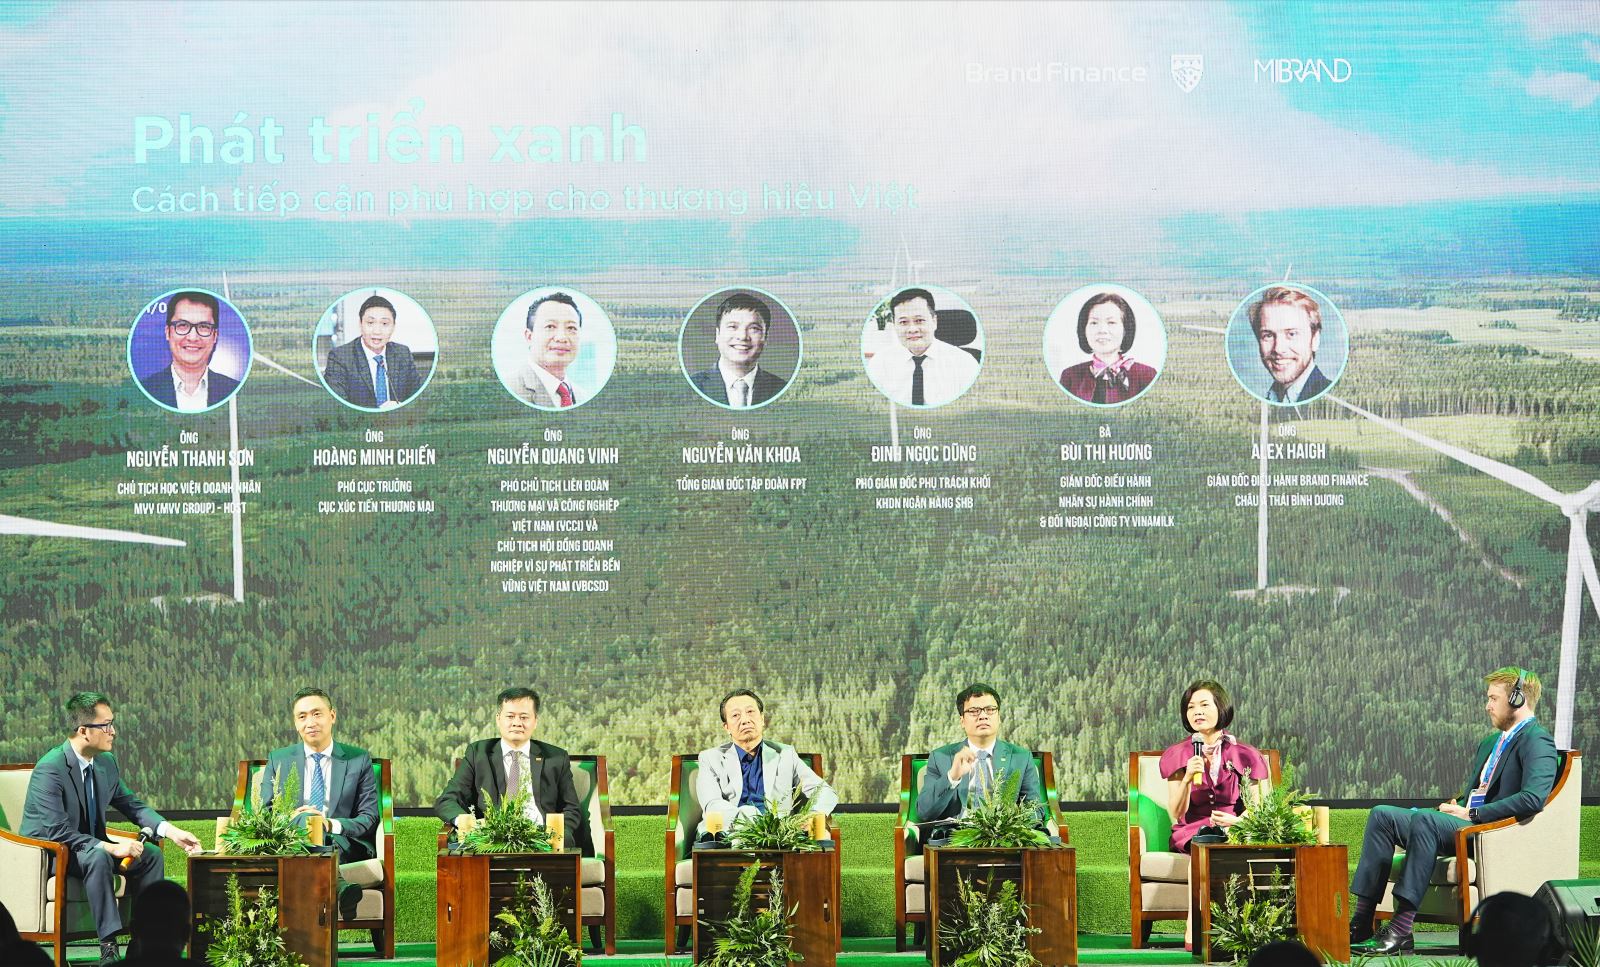 Chia sẻ của Vinamilk về chủ đề “Phát triển xanh – Cách tiếp cận phù hợp cho các thương hiệu Việt” thu hút sự quan tâm tại sự kiện - Ảnh: Mibrand